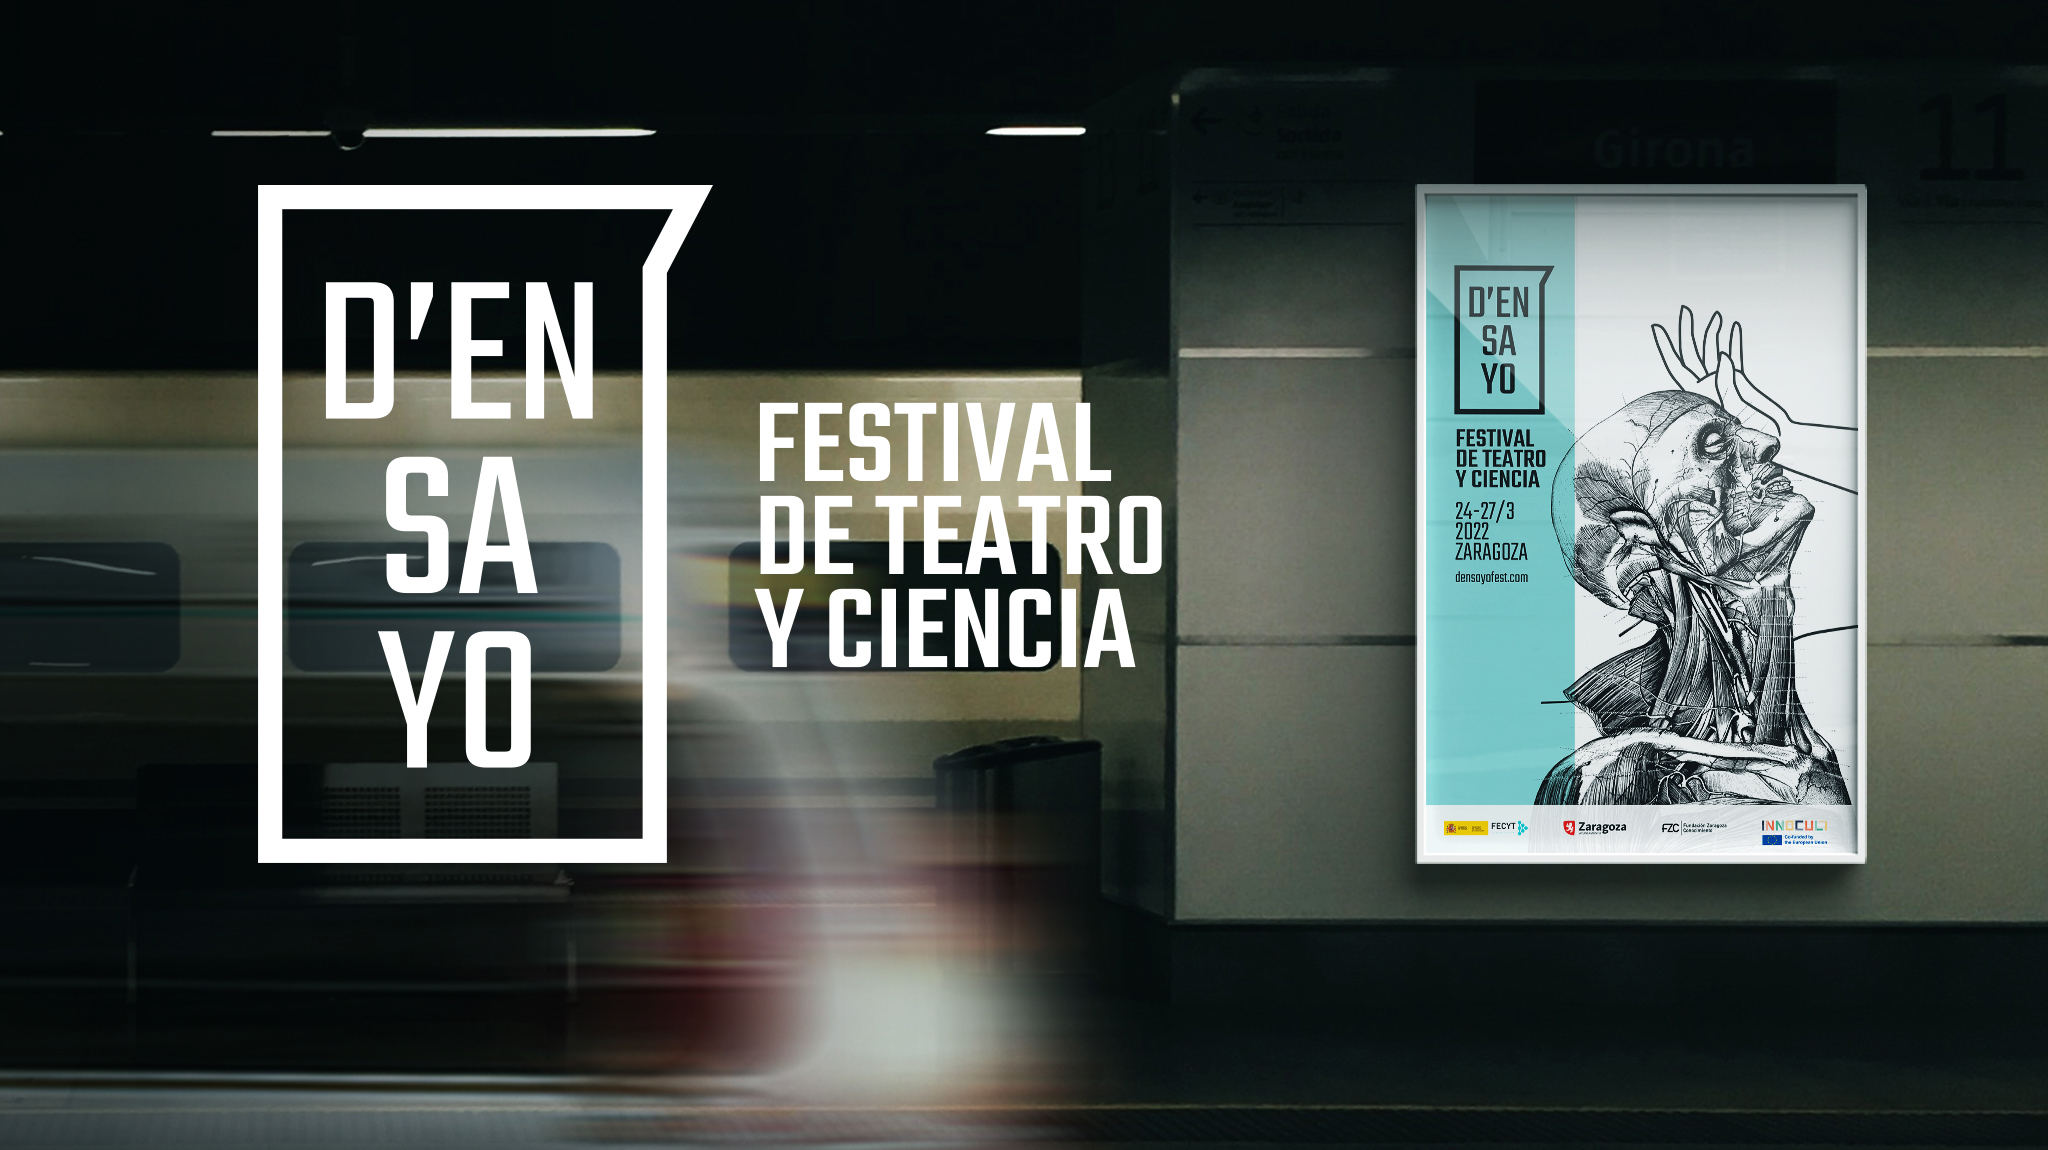 Cartel para el Festila de Teatro y Ciencia D'ensayo de Zaragoza